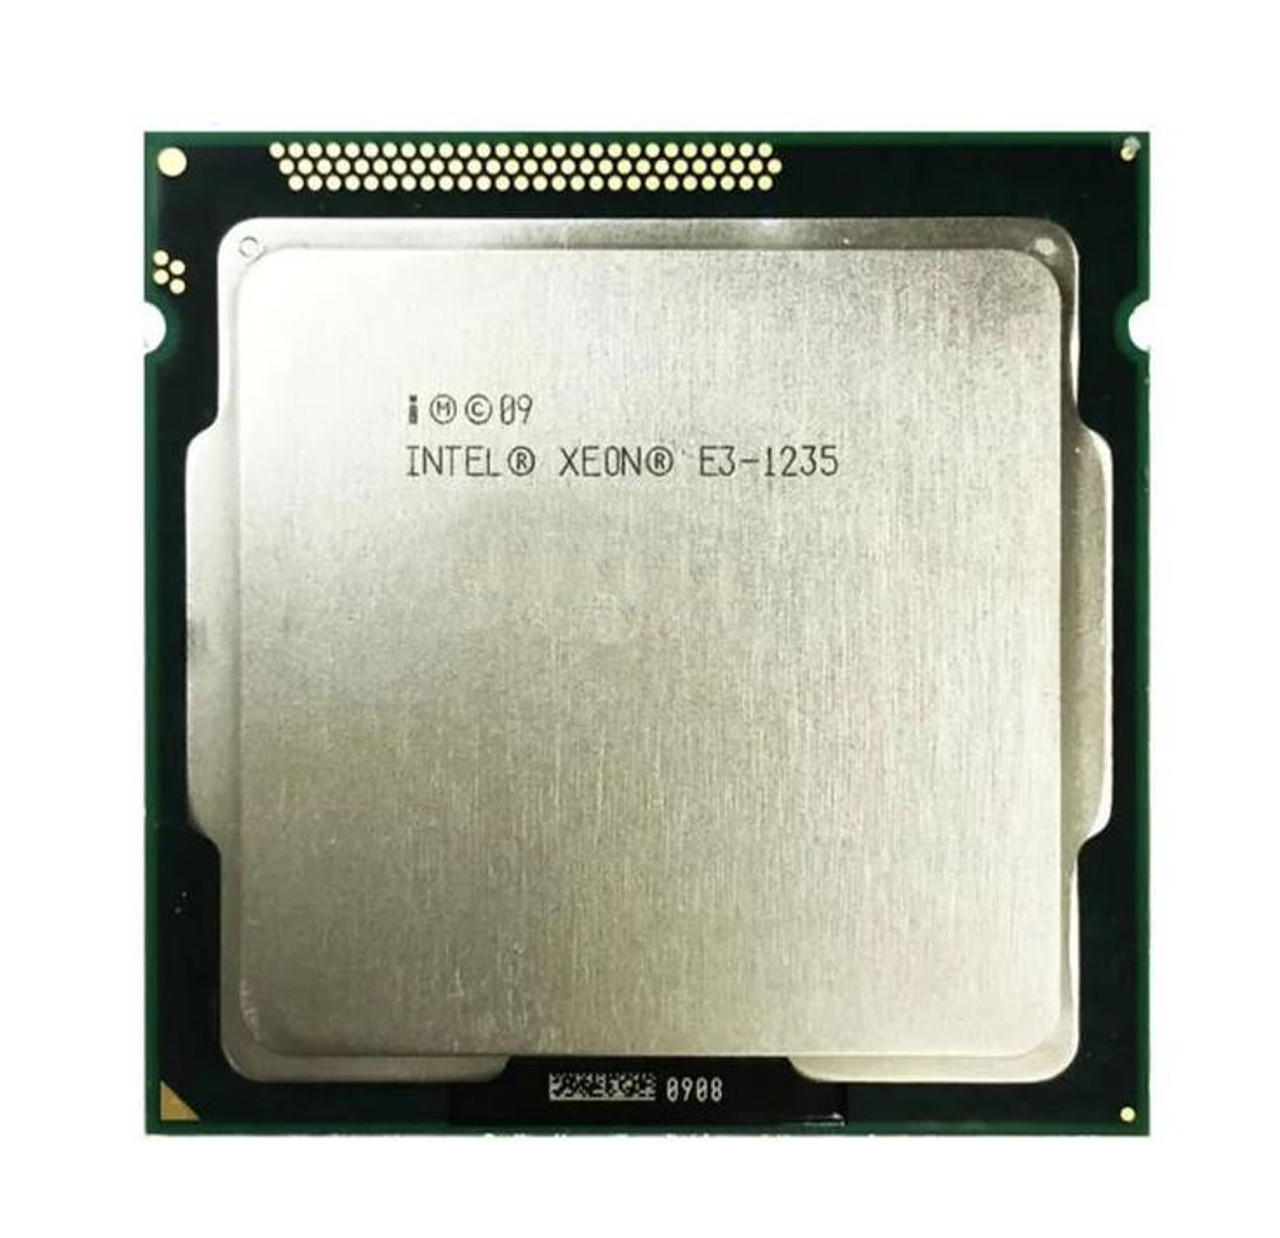 Fujitsu 3.20GHz 5.00GT/s DMI 8MB L3 Cache Intel Xeon E3-1235 Quad-Core Processor Upgrade